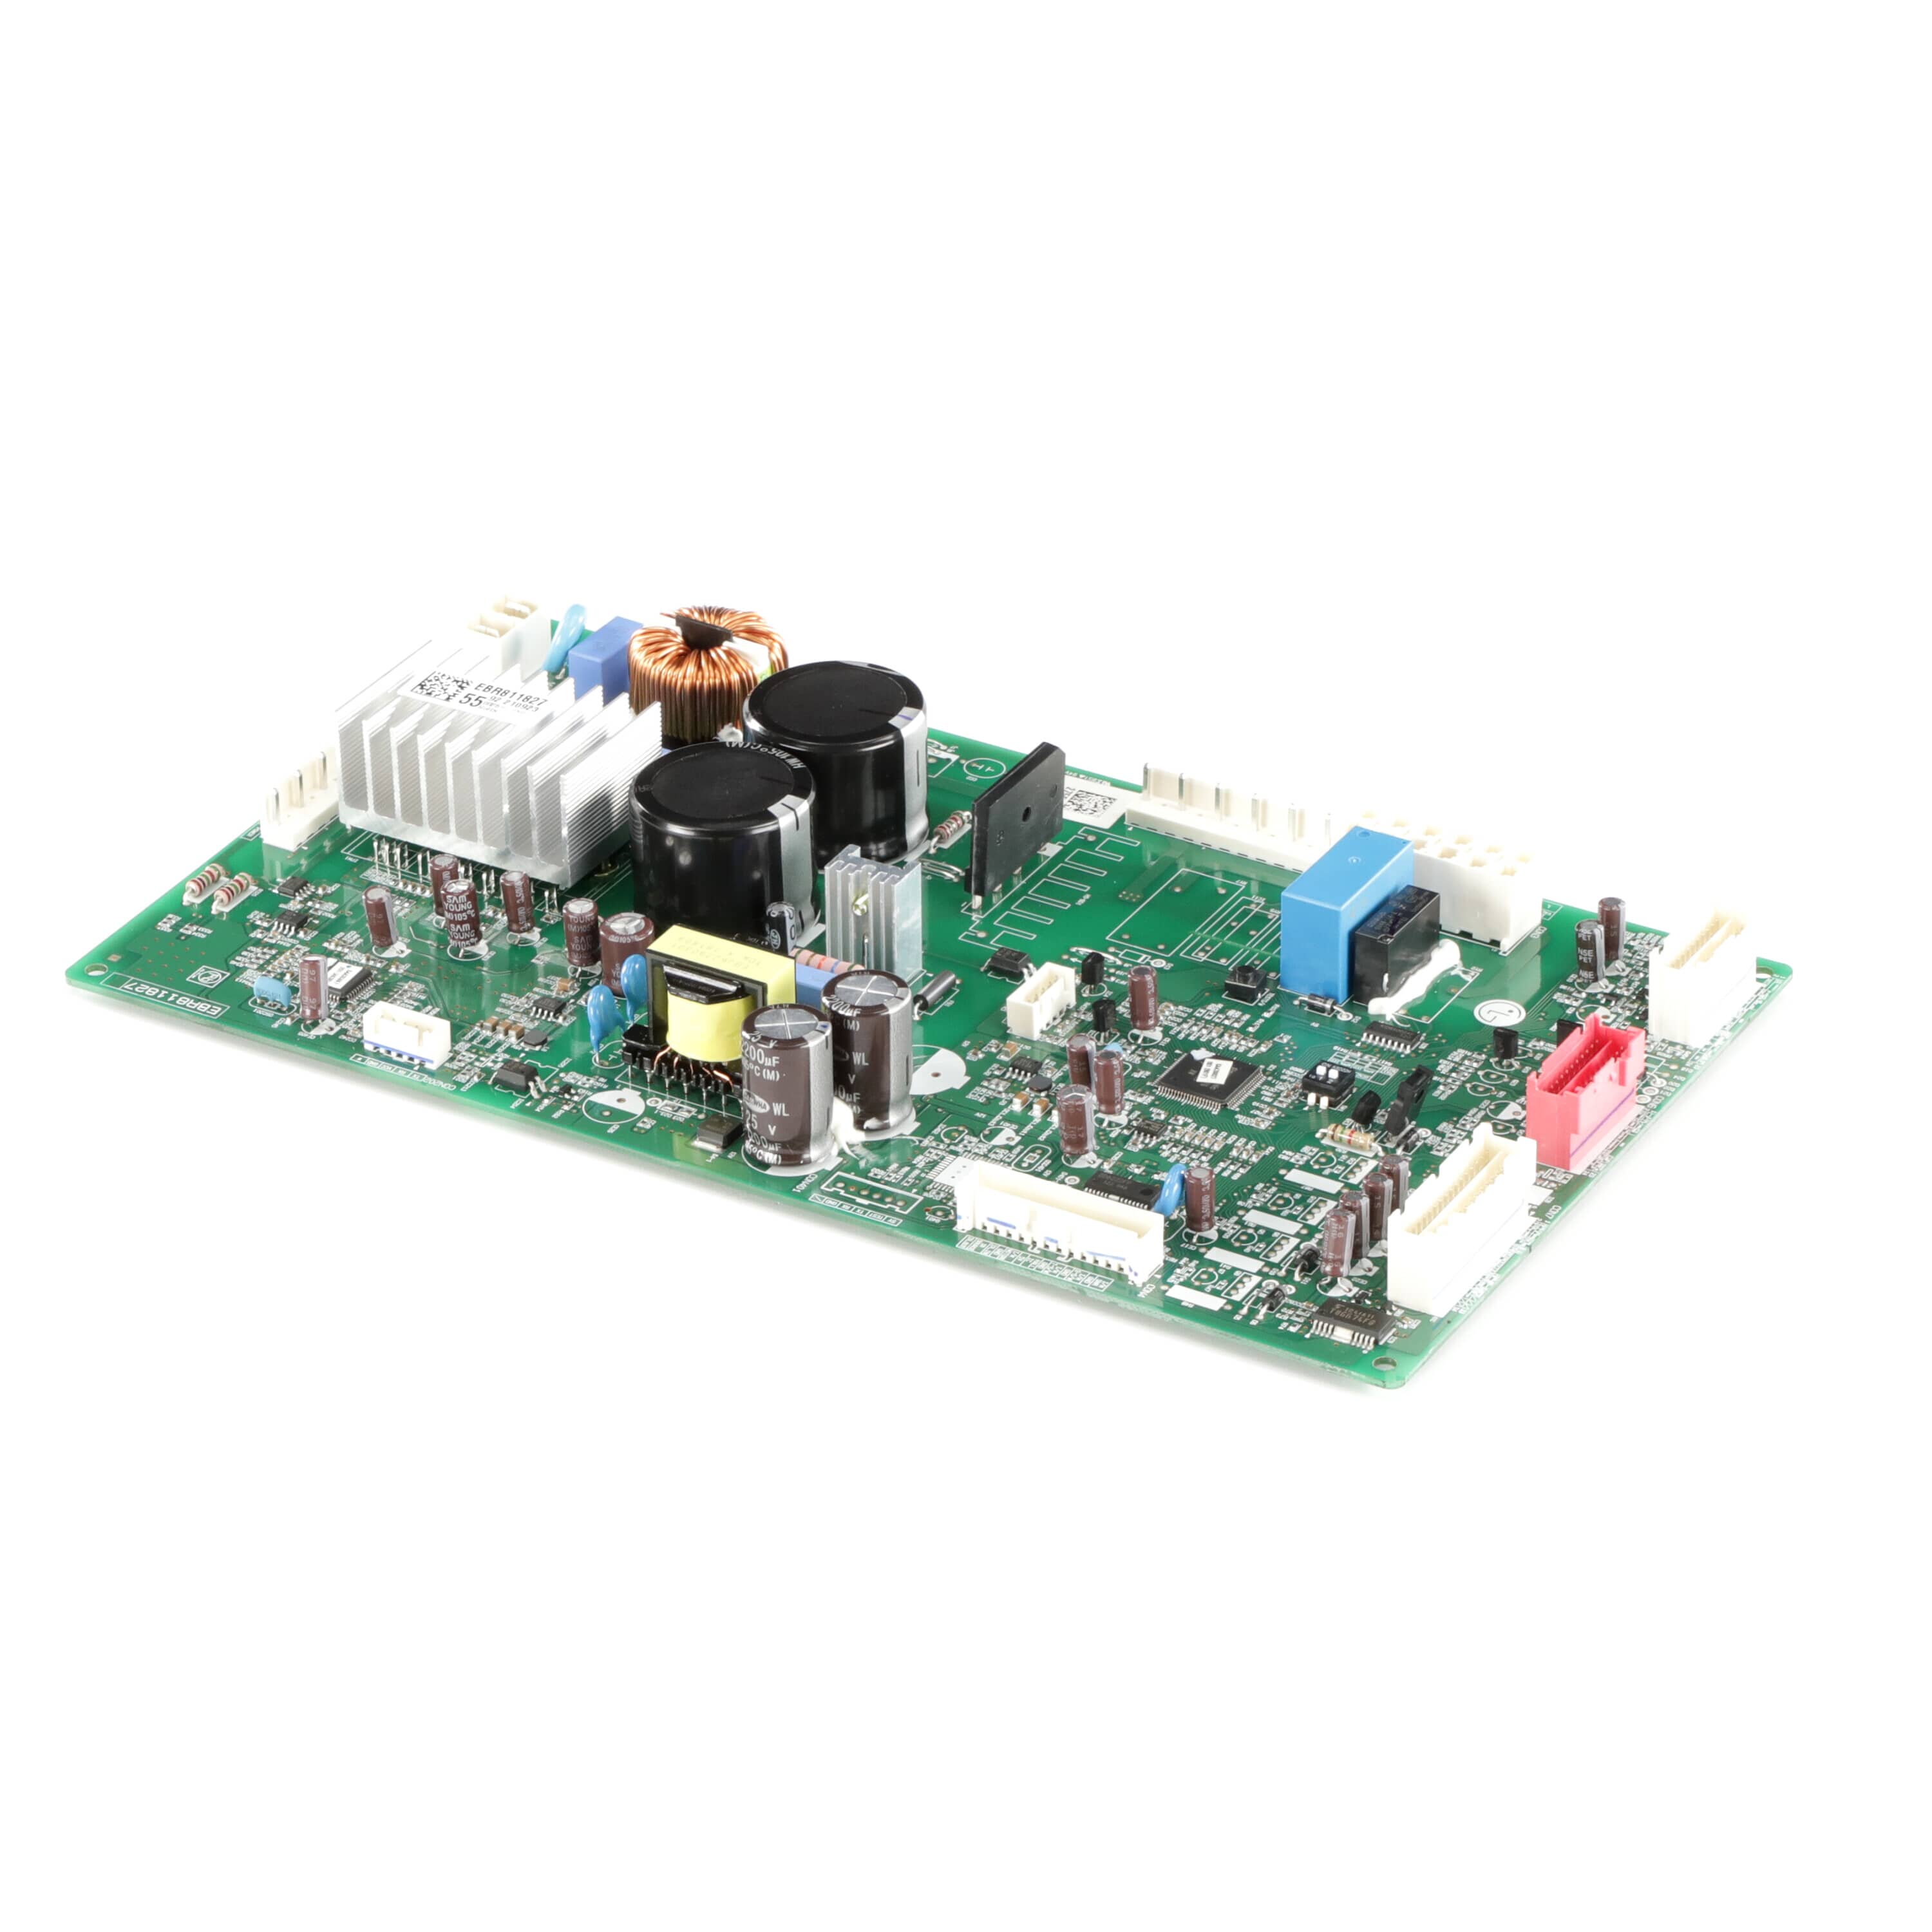 LG EBR81182755 Refrigerator Electronic Control Board